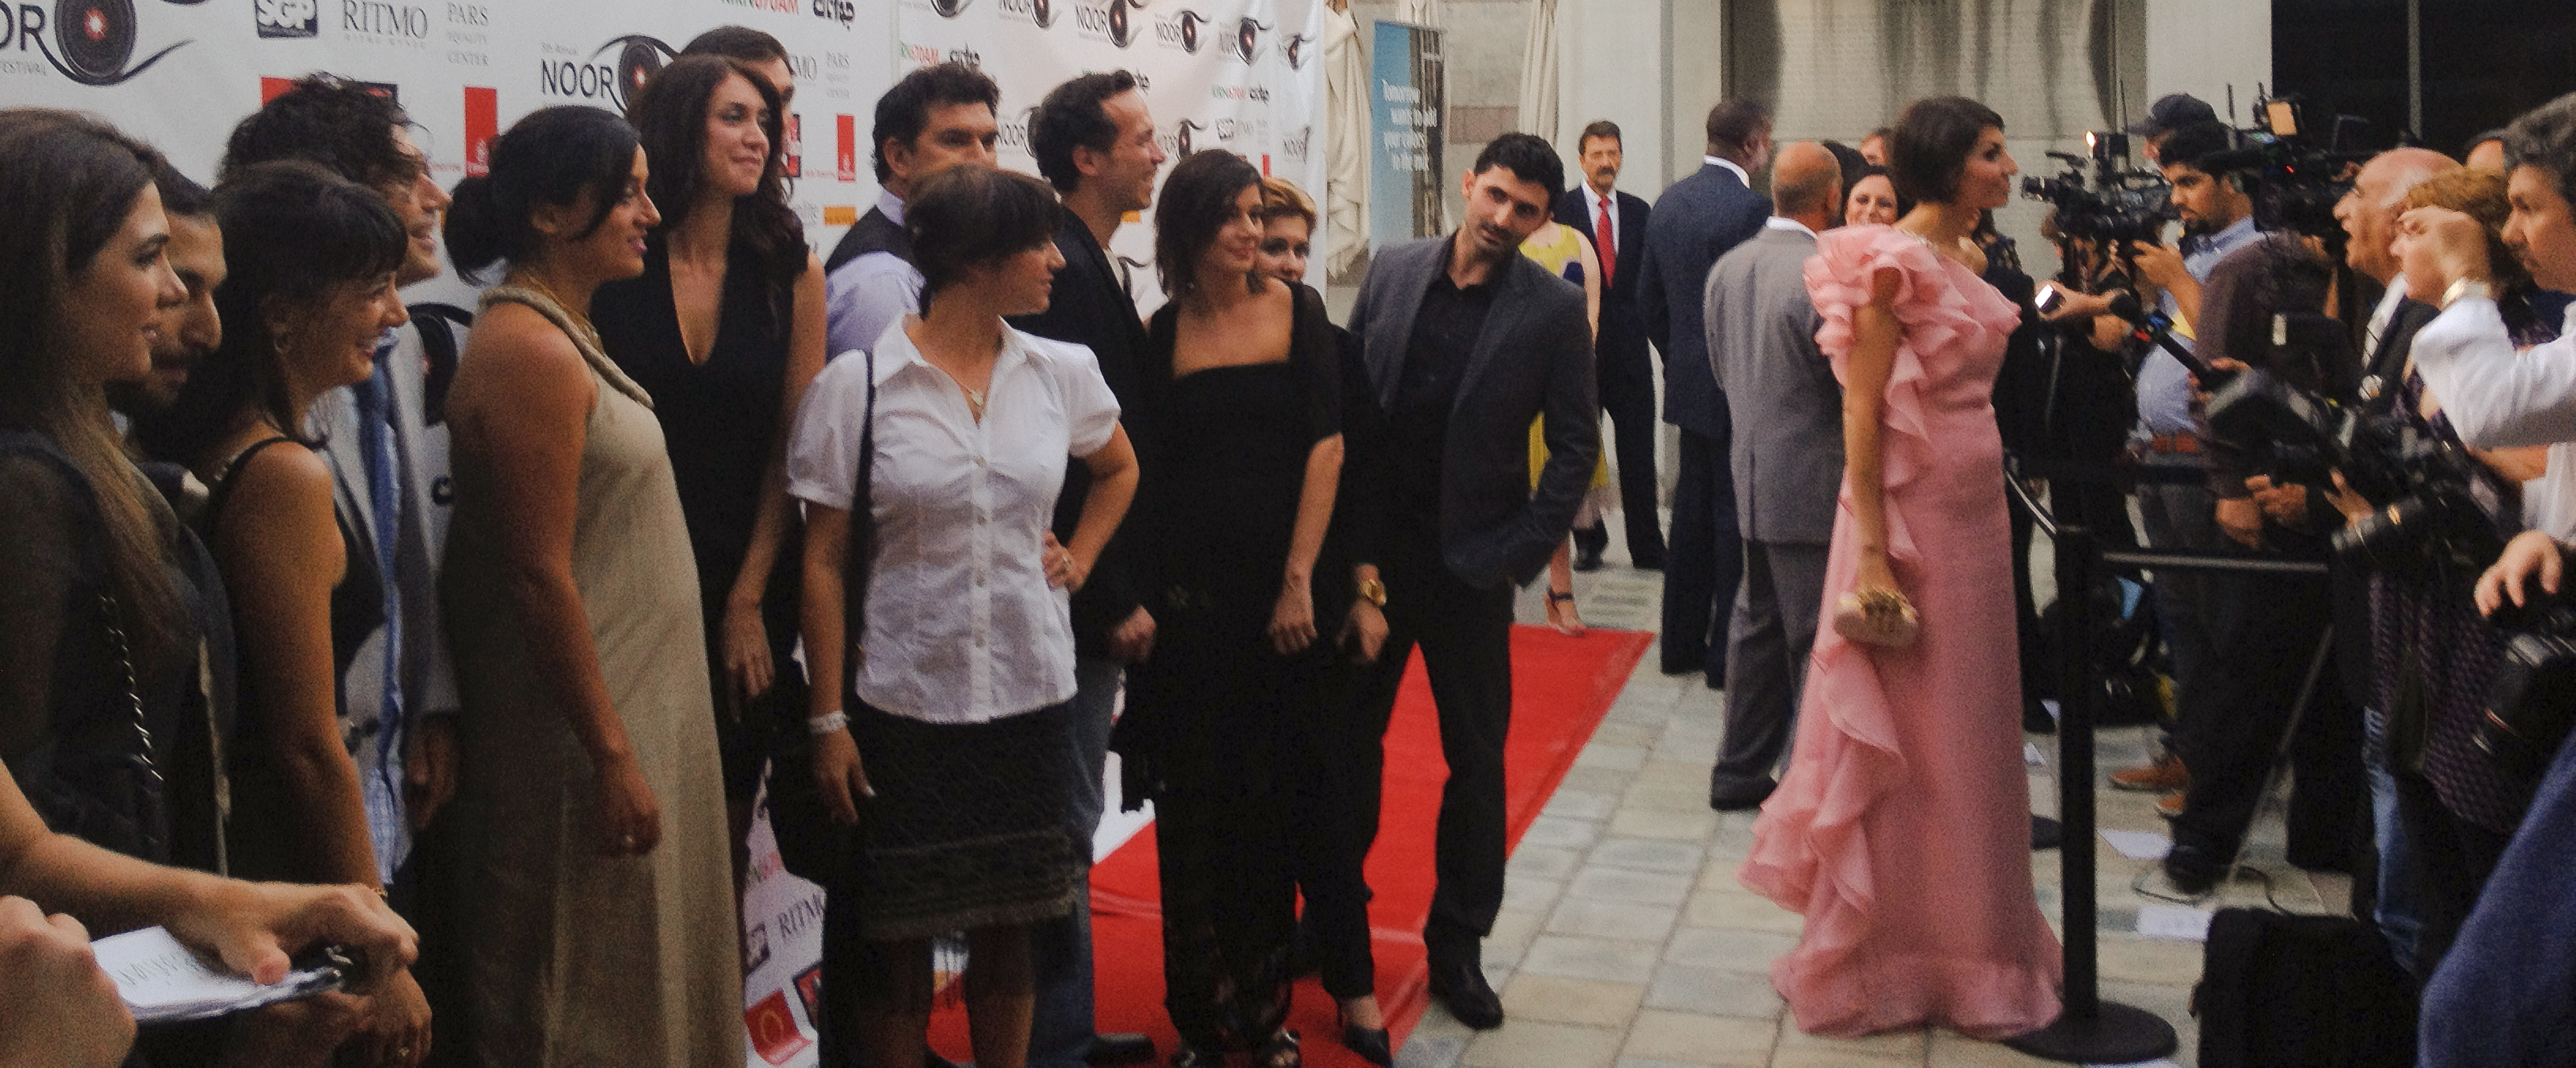 Nazo Bravo at Noor Film Festival red carpet event